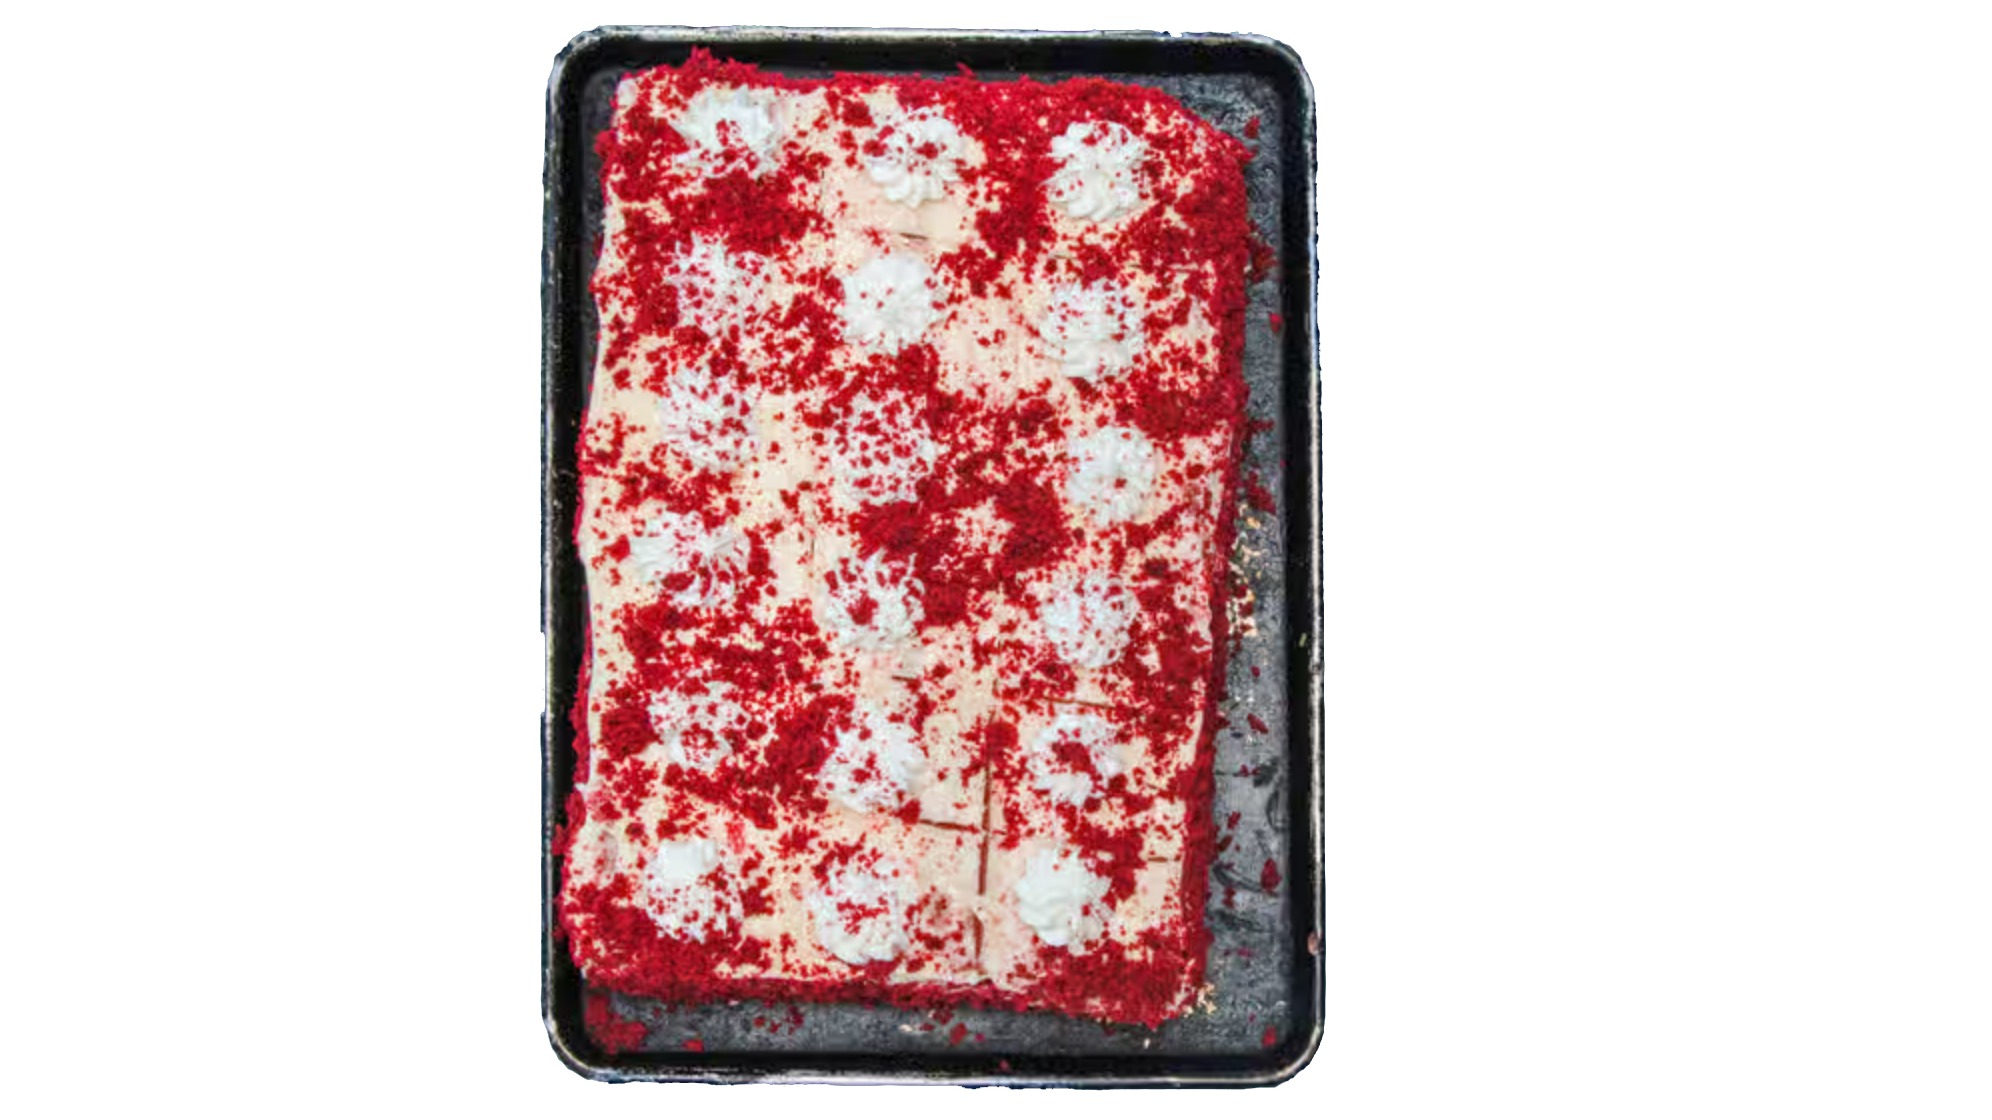 House-Made Red Velvet Cake